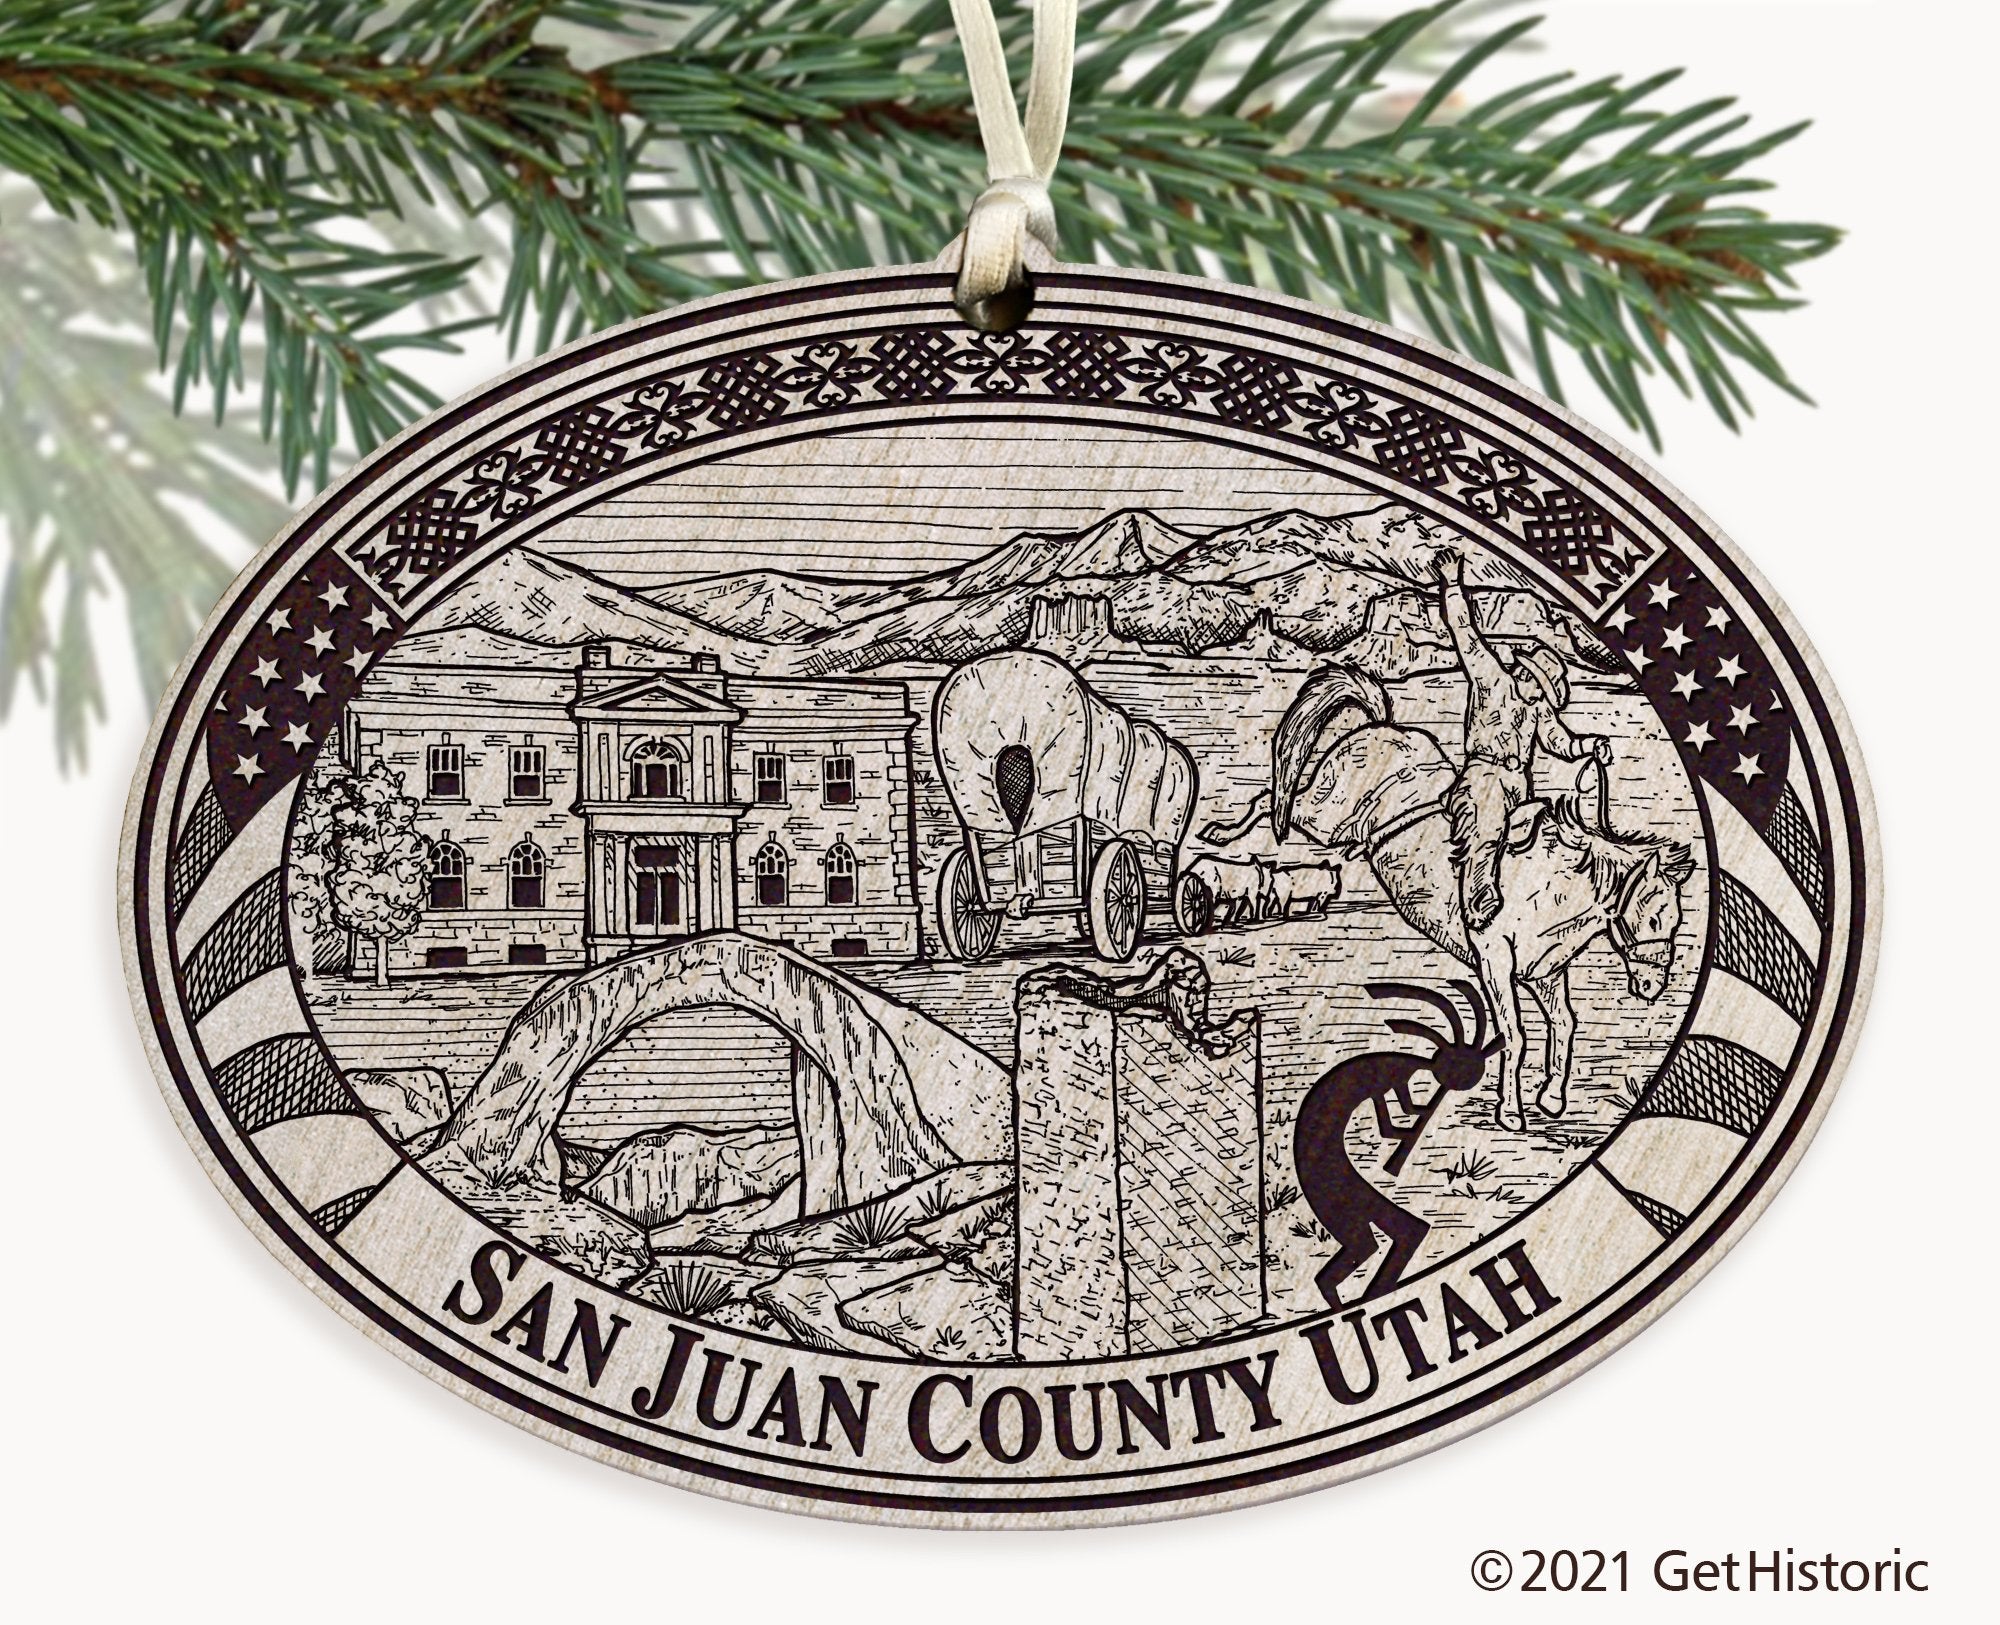 San Juan County Utah Engraved Ornament